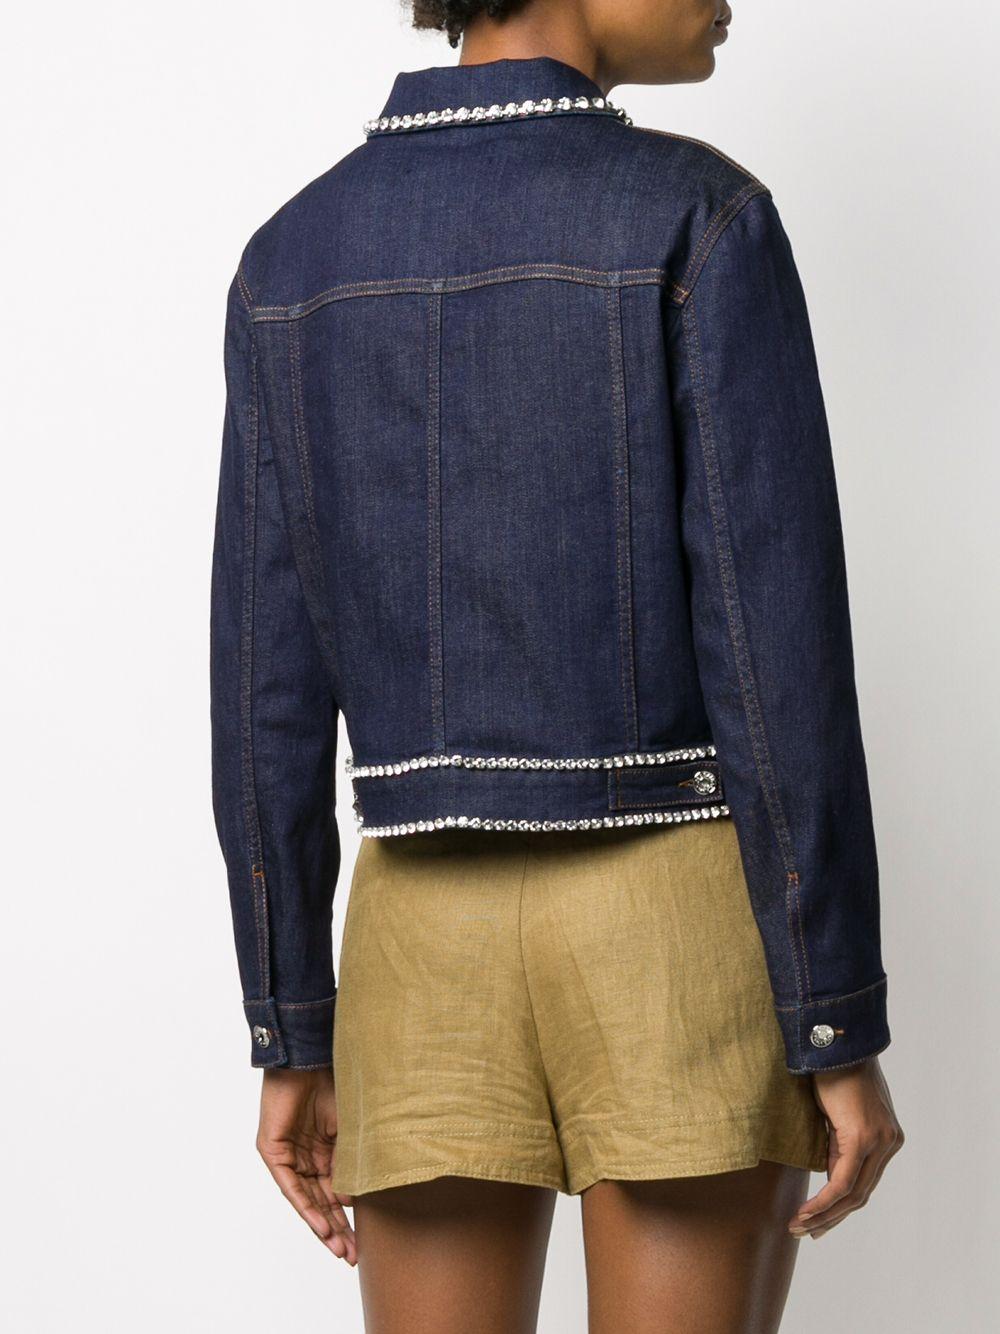 Dolce & Gabbana Denim Jacket With Rhinestone Details in Blue - Lyst